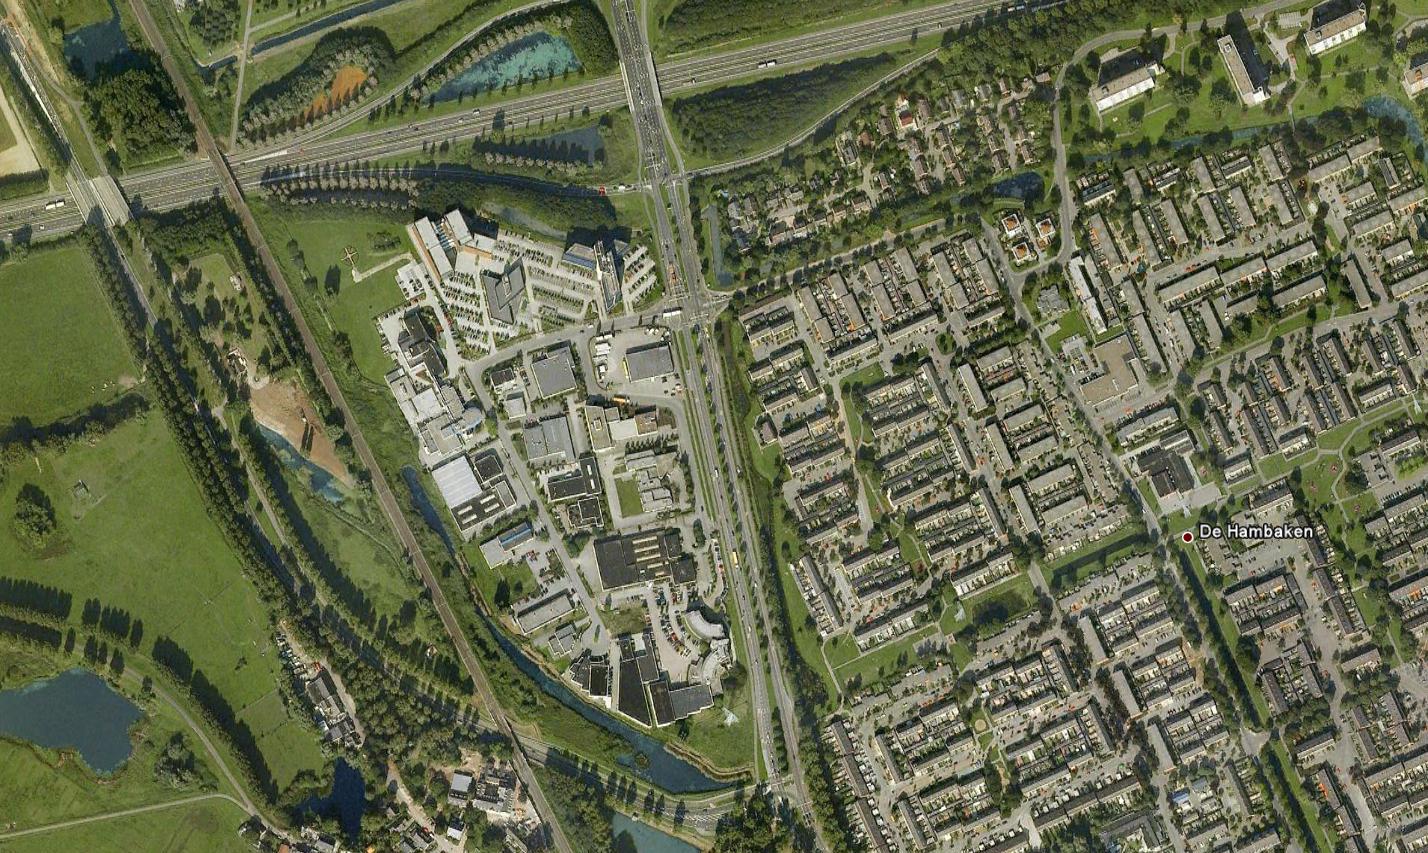 Omgevingsfactoren Het bedrijventerrein staat bekend als High Tech Park en is gelegen aan de Noordzijde van s-hertogenbosch.